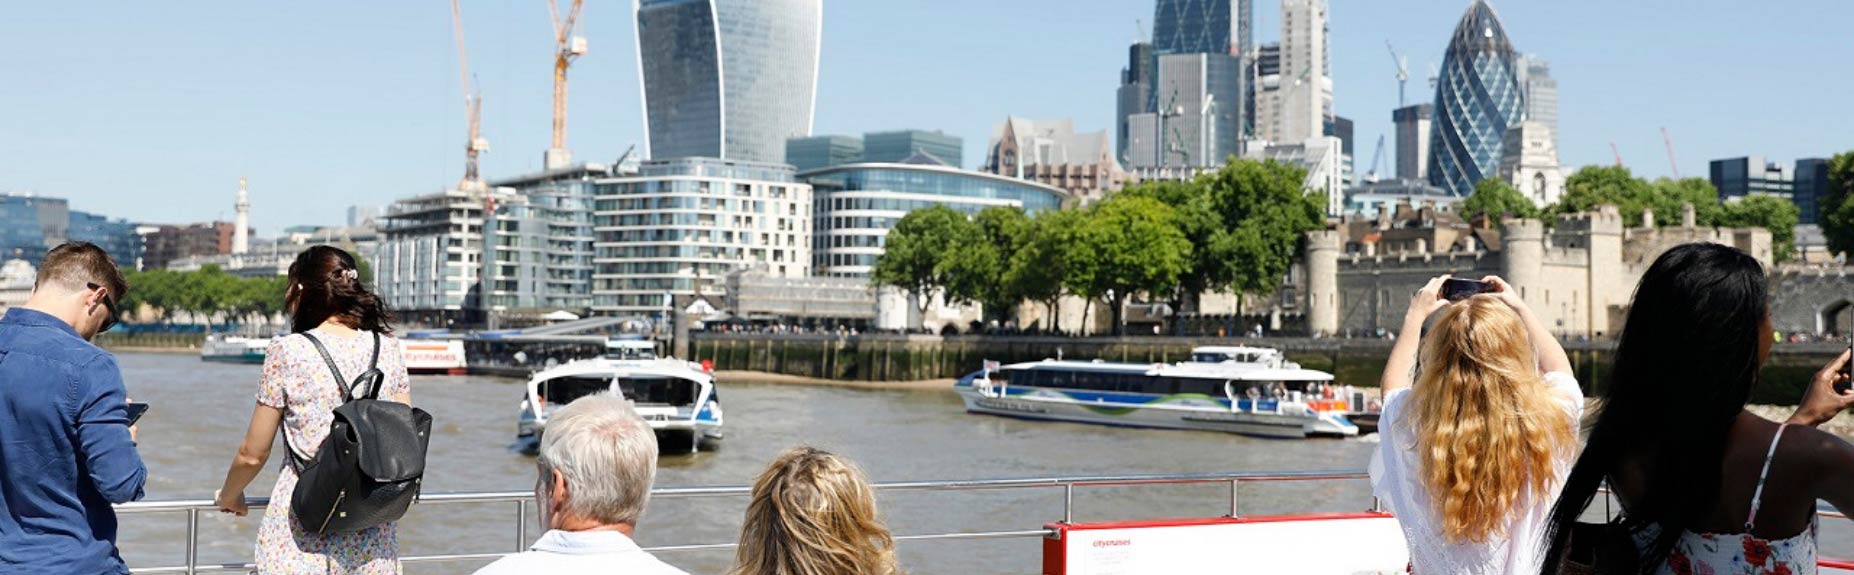 Люди на лодке на Темзе и Лондон на заднем плане